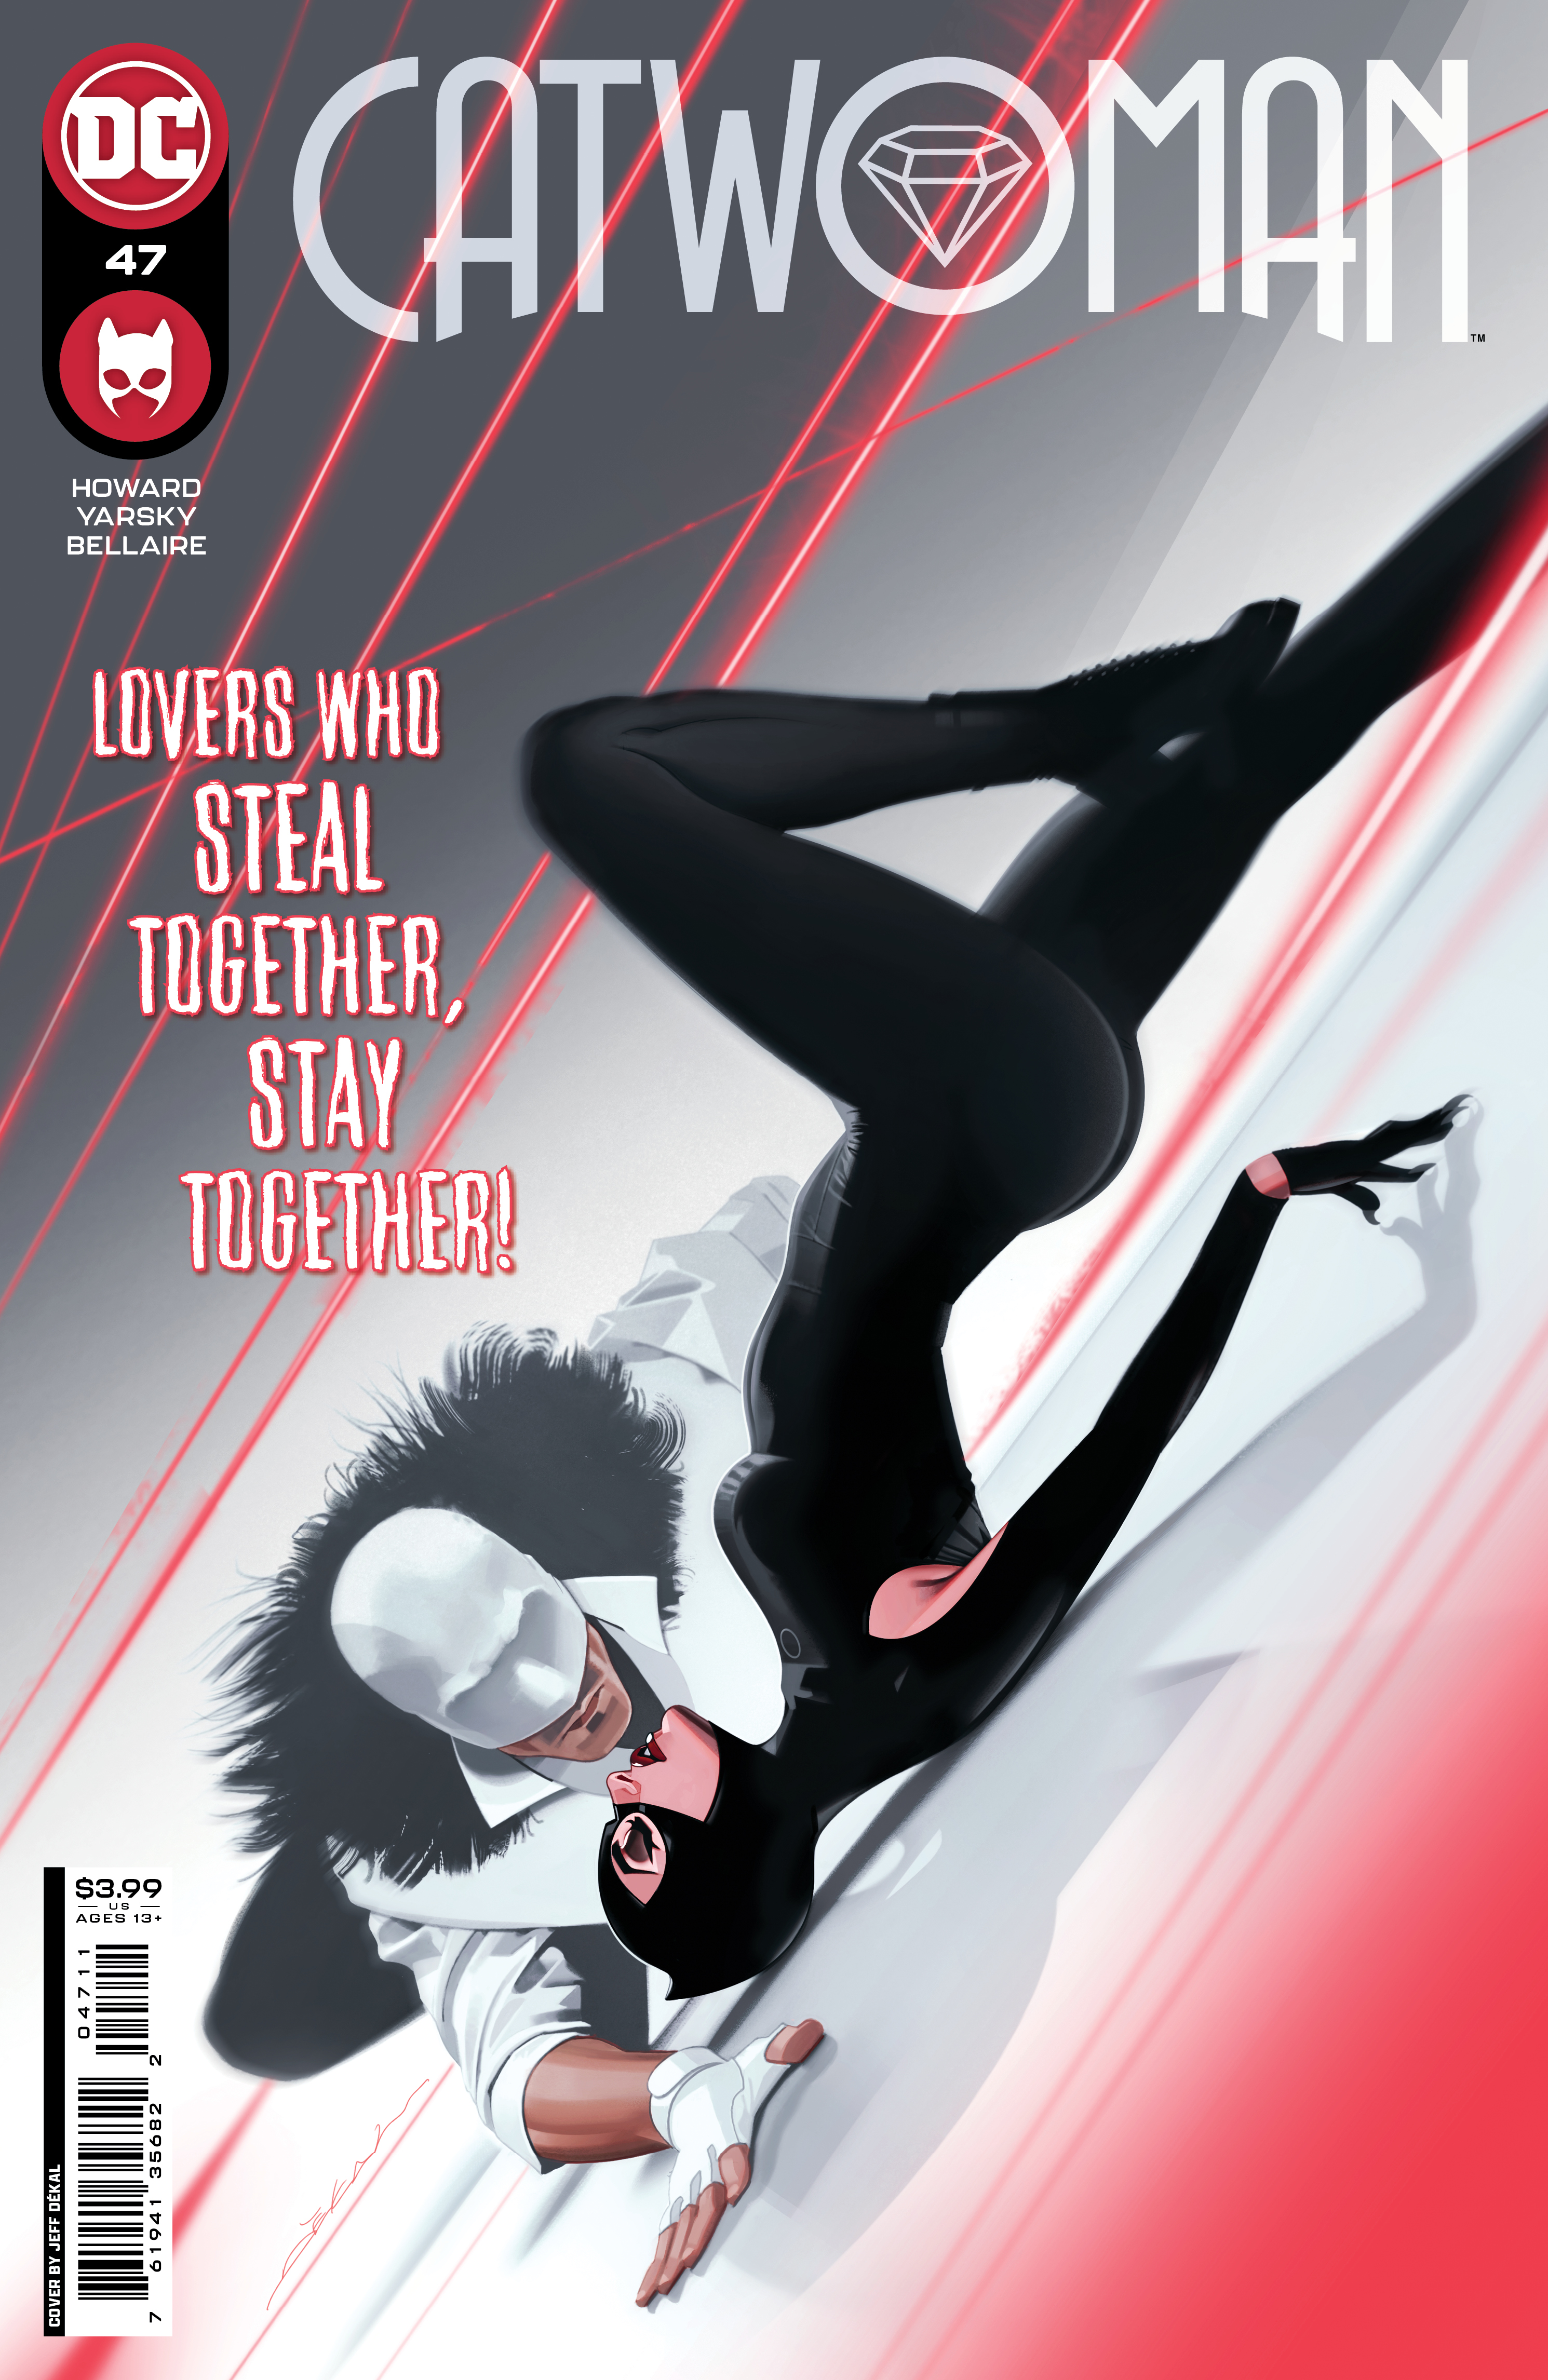 Catwoman #47 Cover A Jeff Dekal (2018)